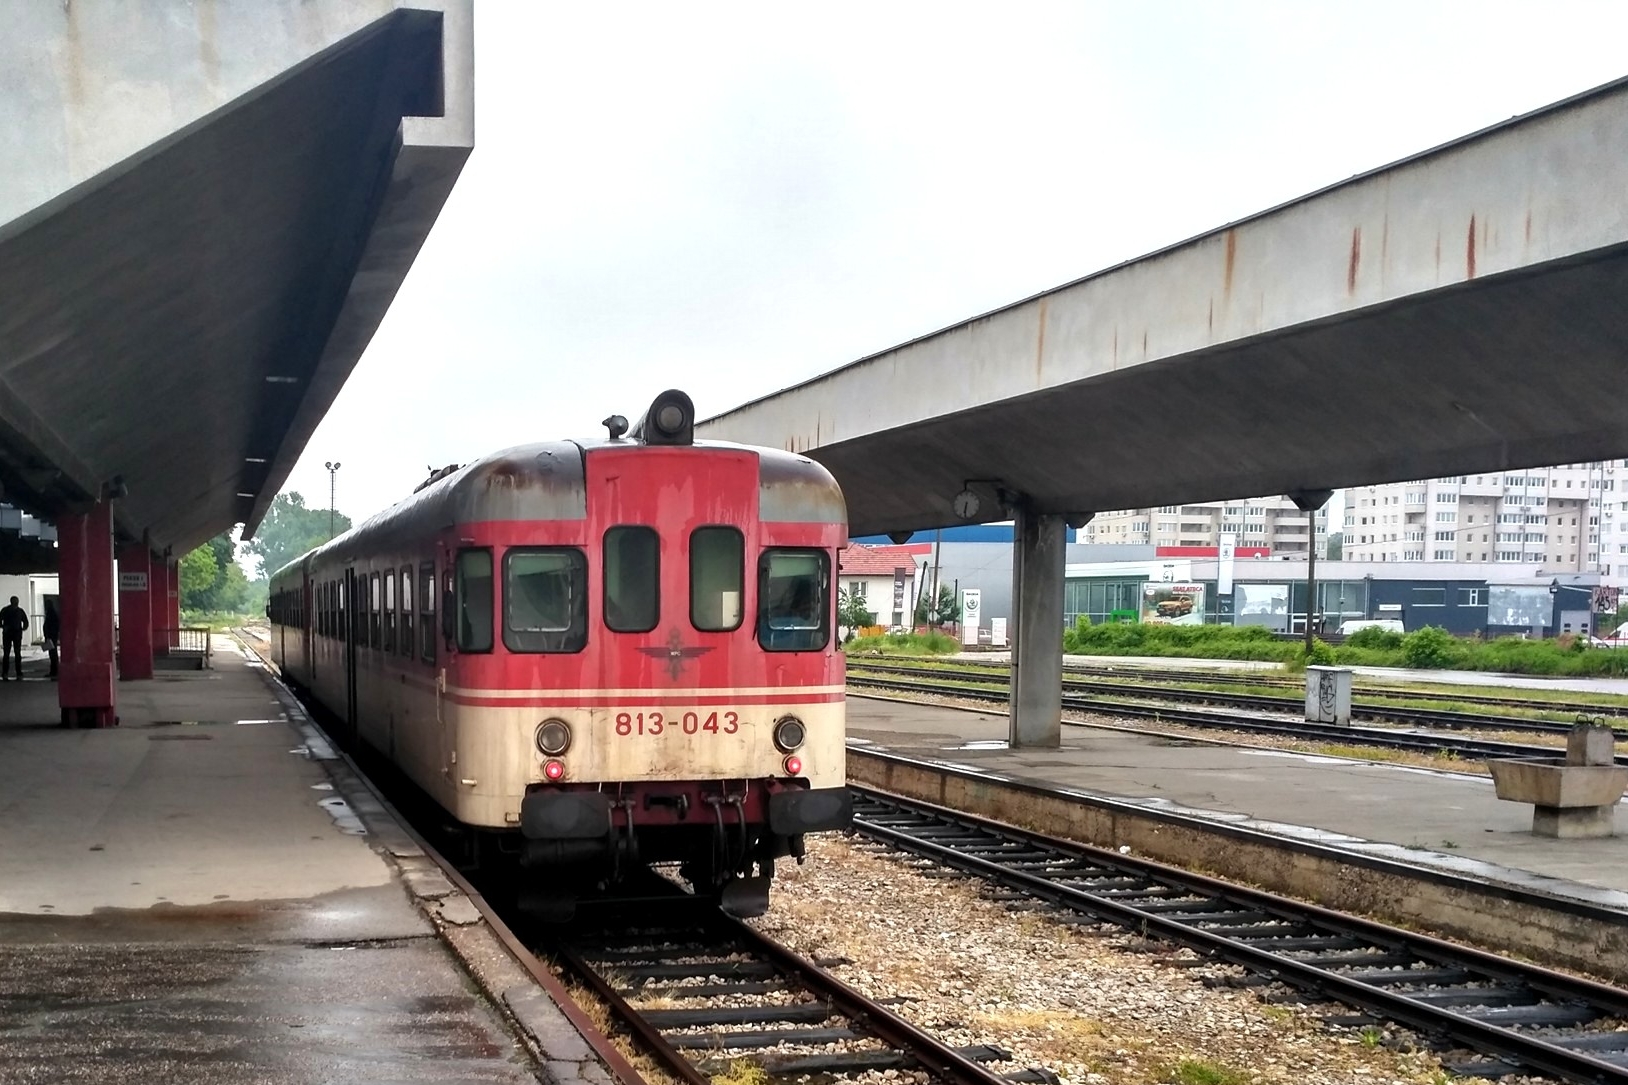 Pociąg kolei Republiki Serbskiej Bośni i Hercegowiny